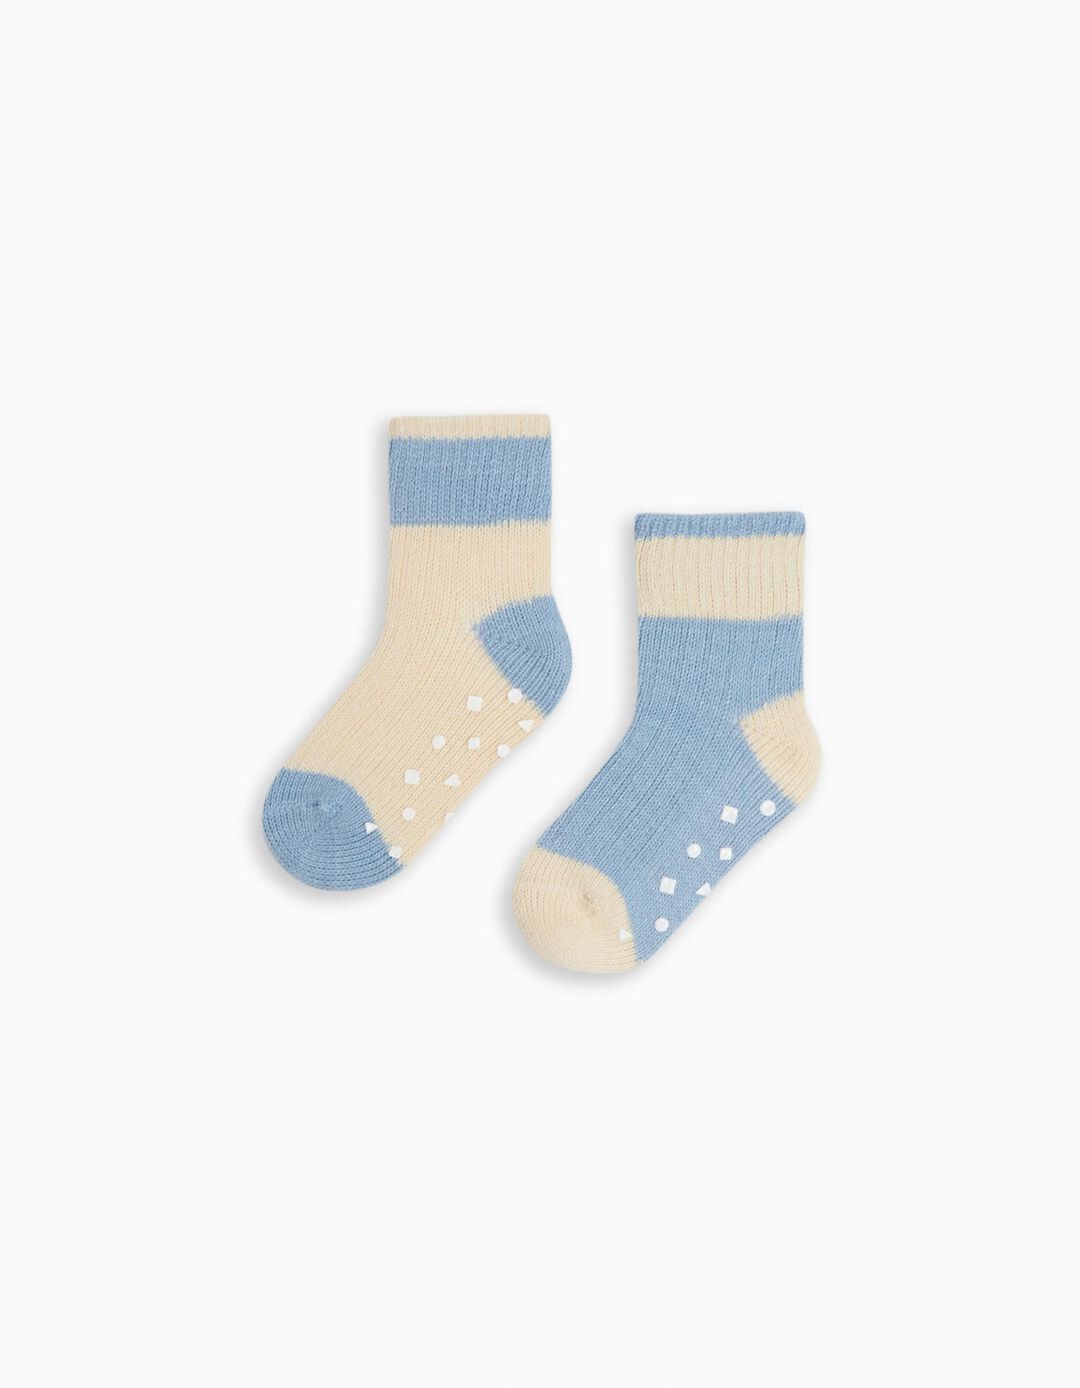 Pack 2 Pairs of Non-Slip Mesh Socks, Boys, Multicolor